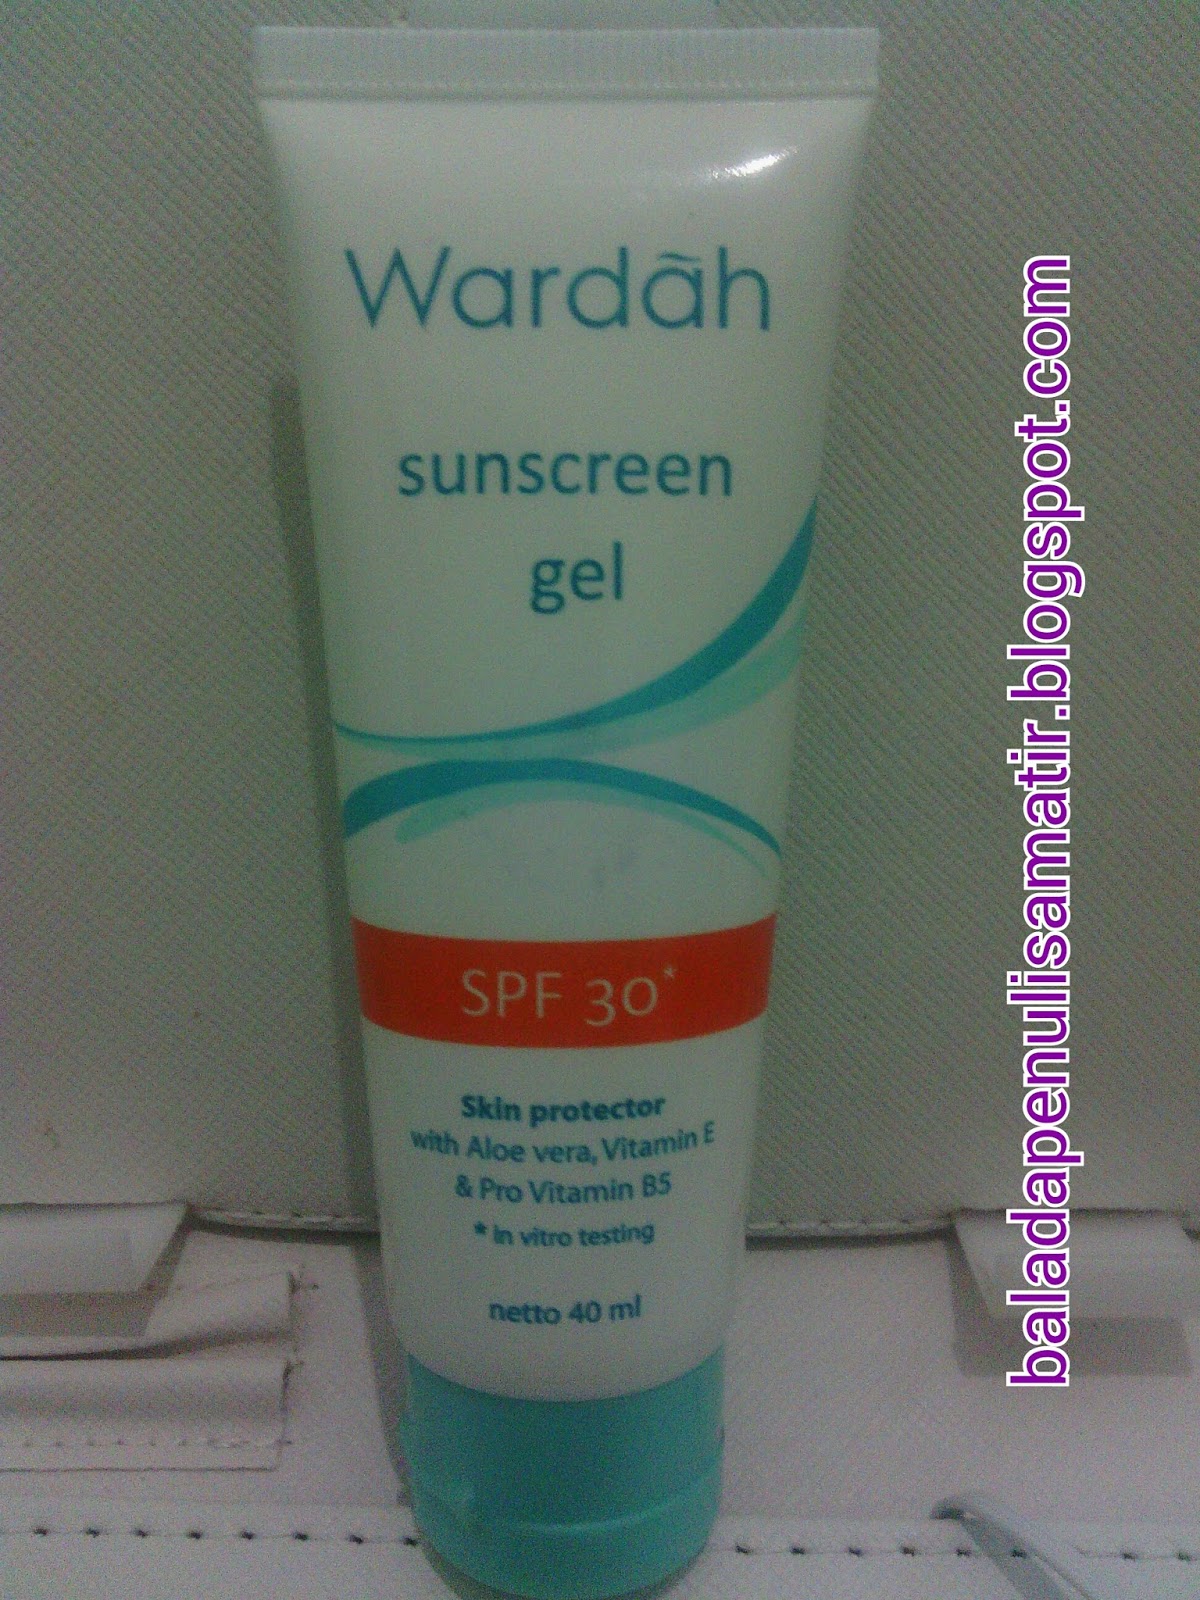 Beauty Talks Wardah Sunscreen Gel Spf 30 Review Updated